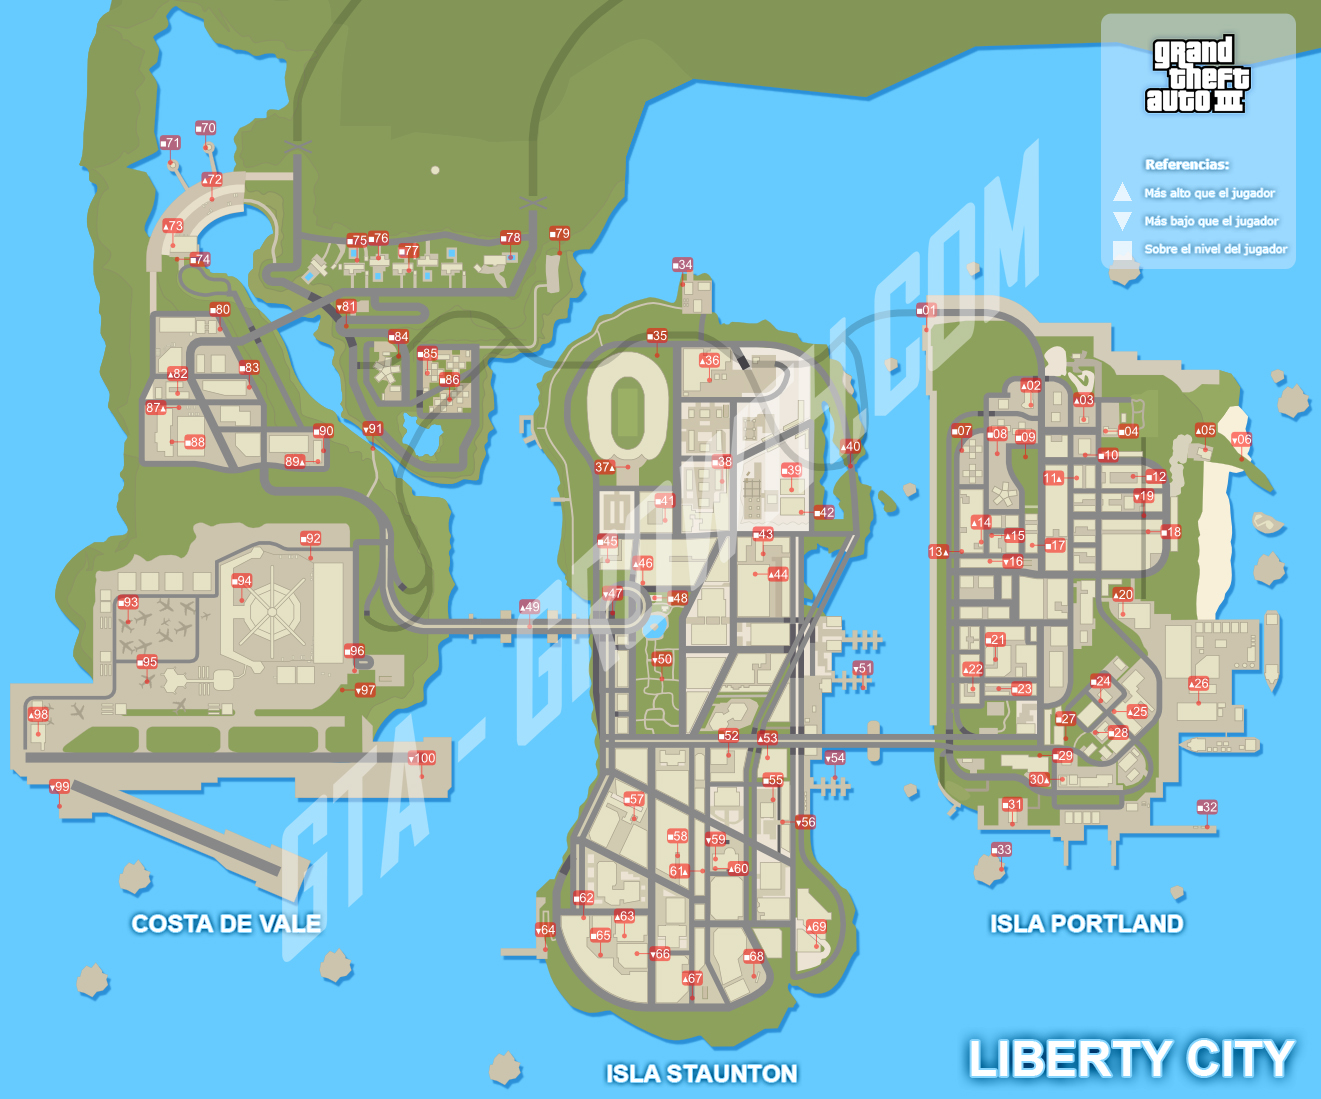 Objetos Ocultos De Grand Theft Auto Iii Grand Theft Encyclopedia Fandom Powered By Wikia 5443